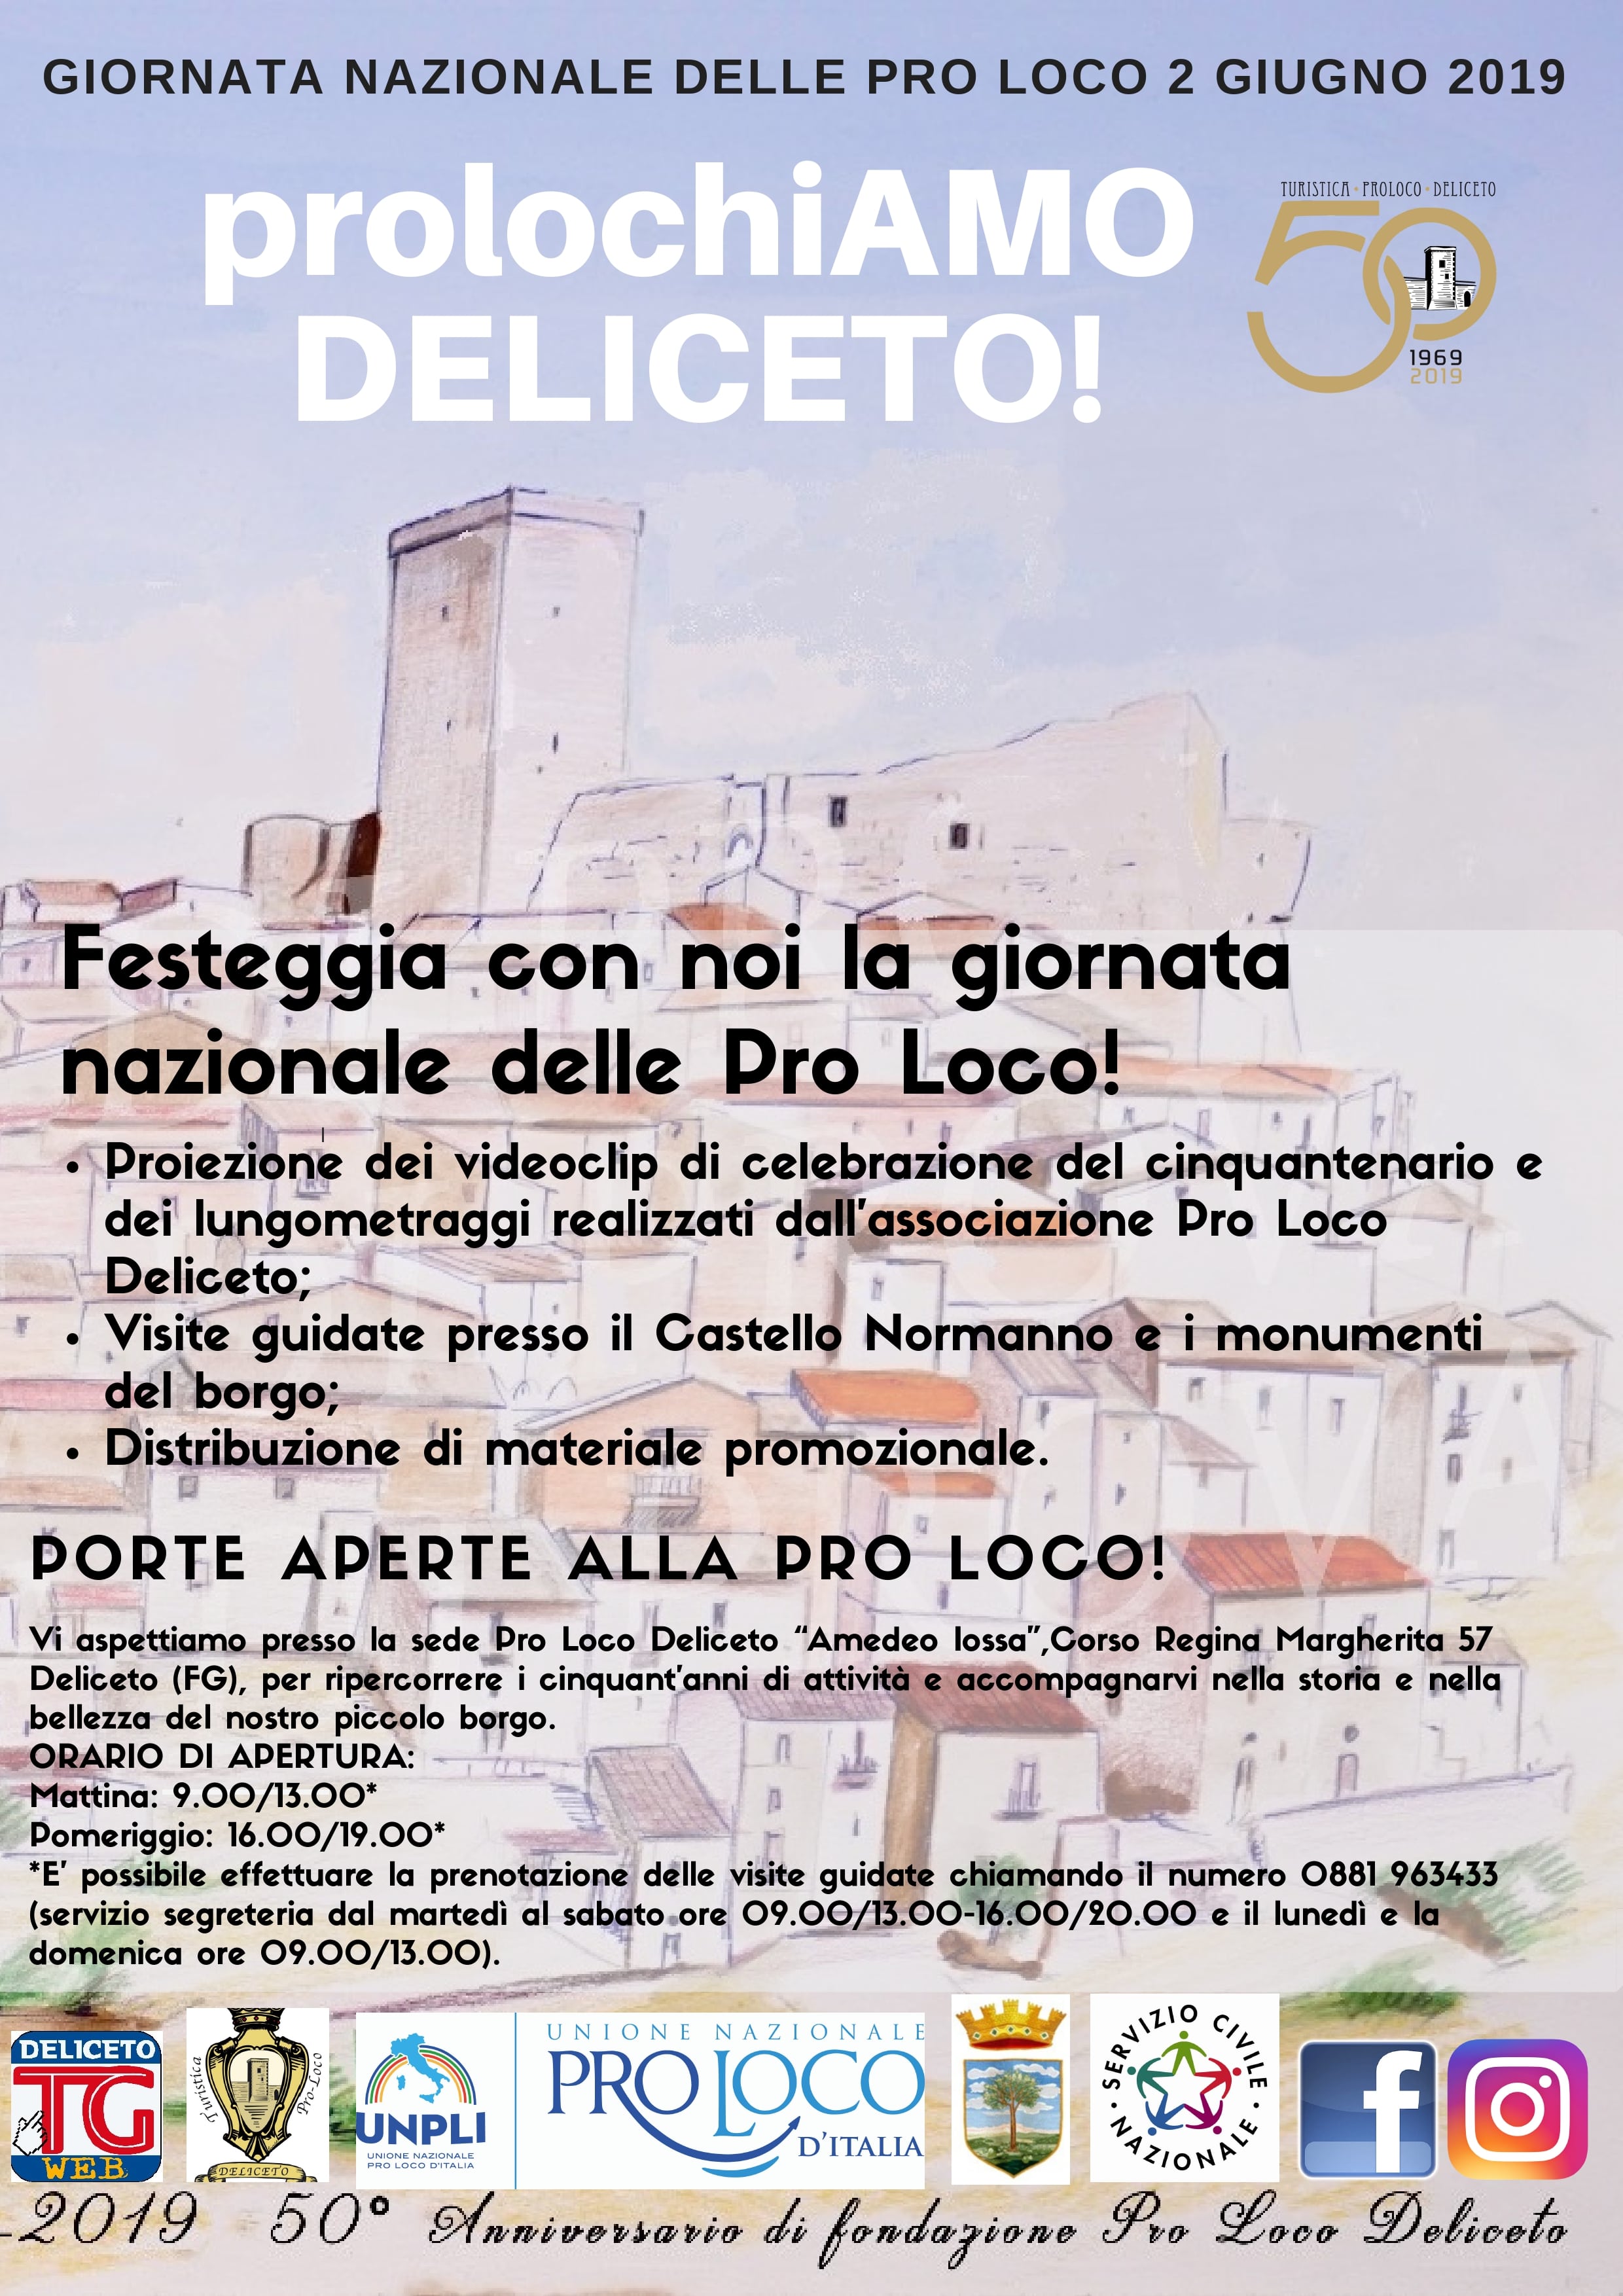 Manifesto-prolochiAMO-DELICETO_page-0001-min.jpg